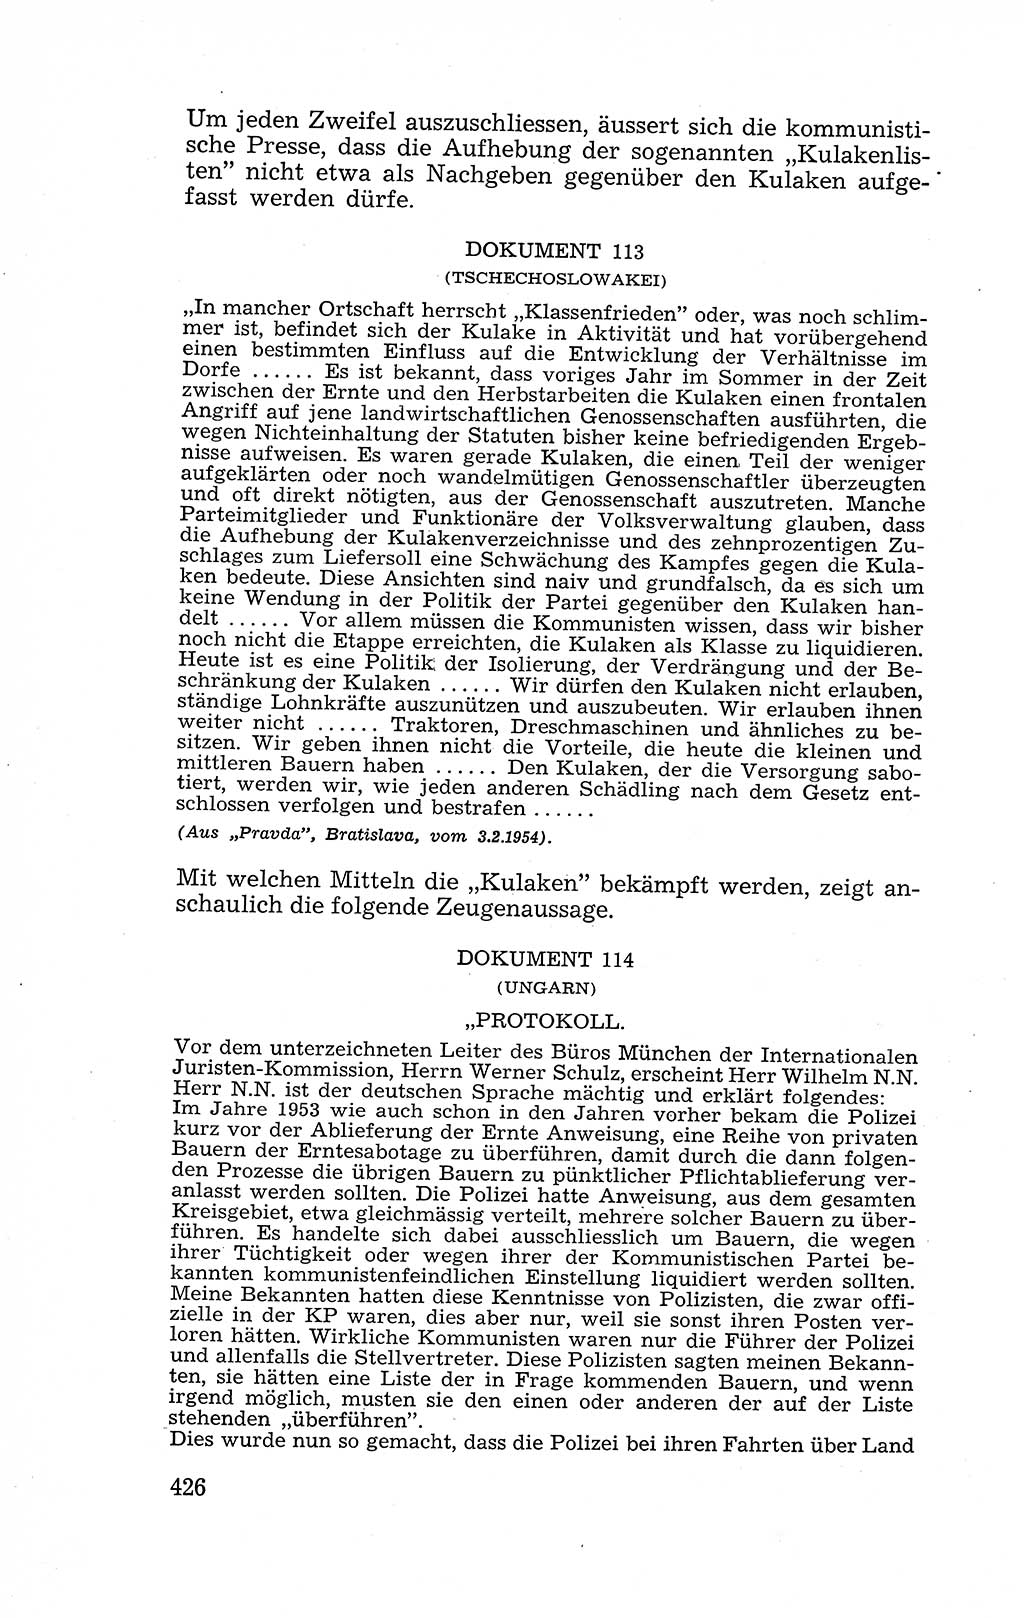 Recht in Fesseln, Dokumente, Internationale Juristen-Kommission [Bundesrepublik Deutschland (BRD)] 1955, Seite 426 (R. Dok. IJK BRD 1955, S. 426)